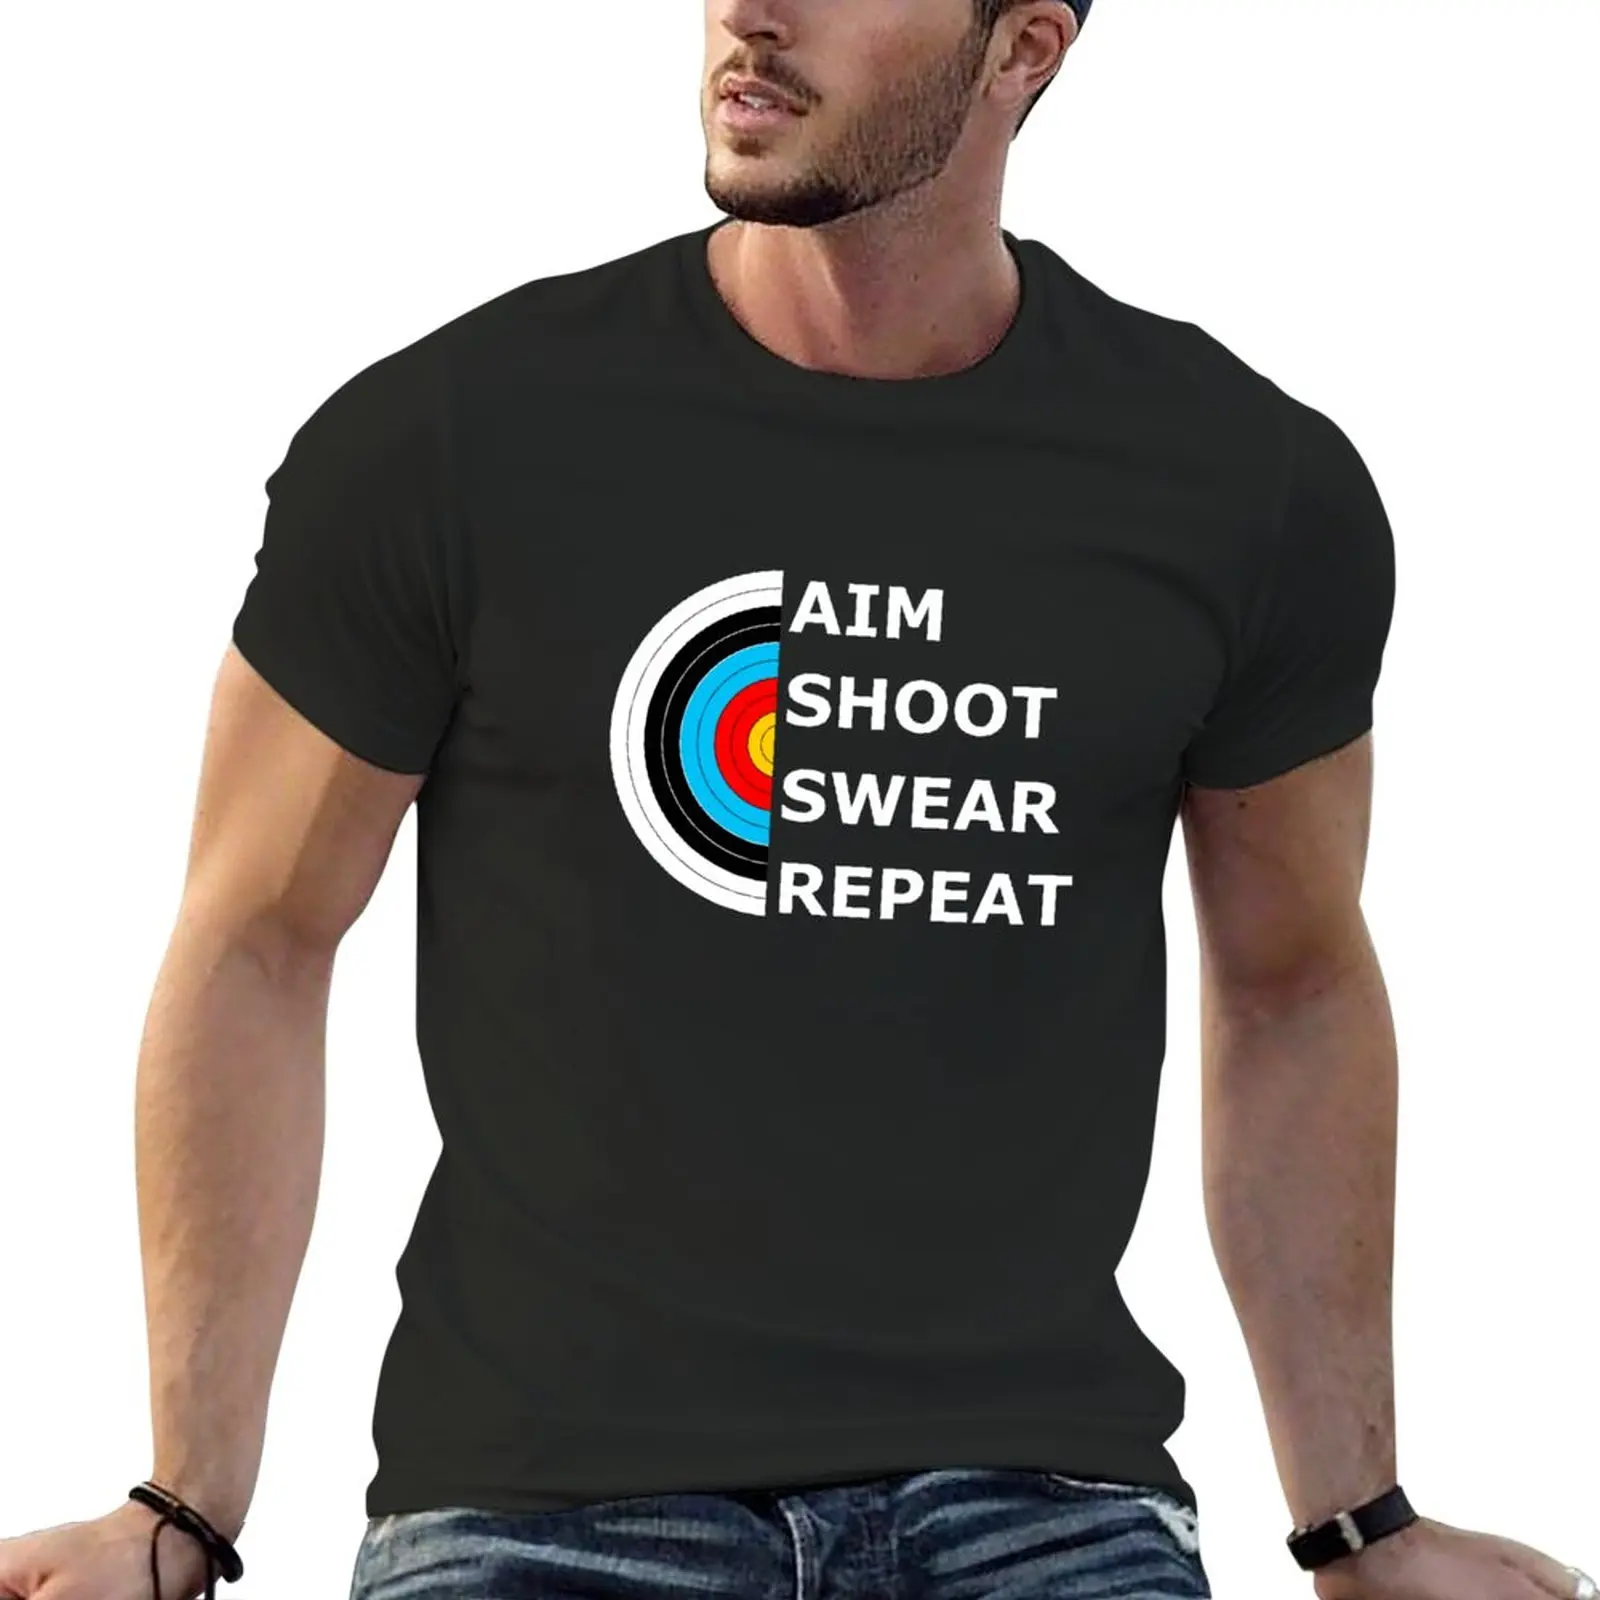 

New Aim Shoot Swear Repeat - Archery Target T-Shirt kawaii clothes plain t-shirt men workout shirt